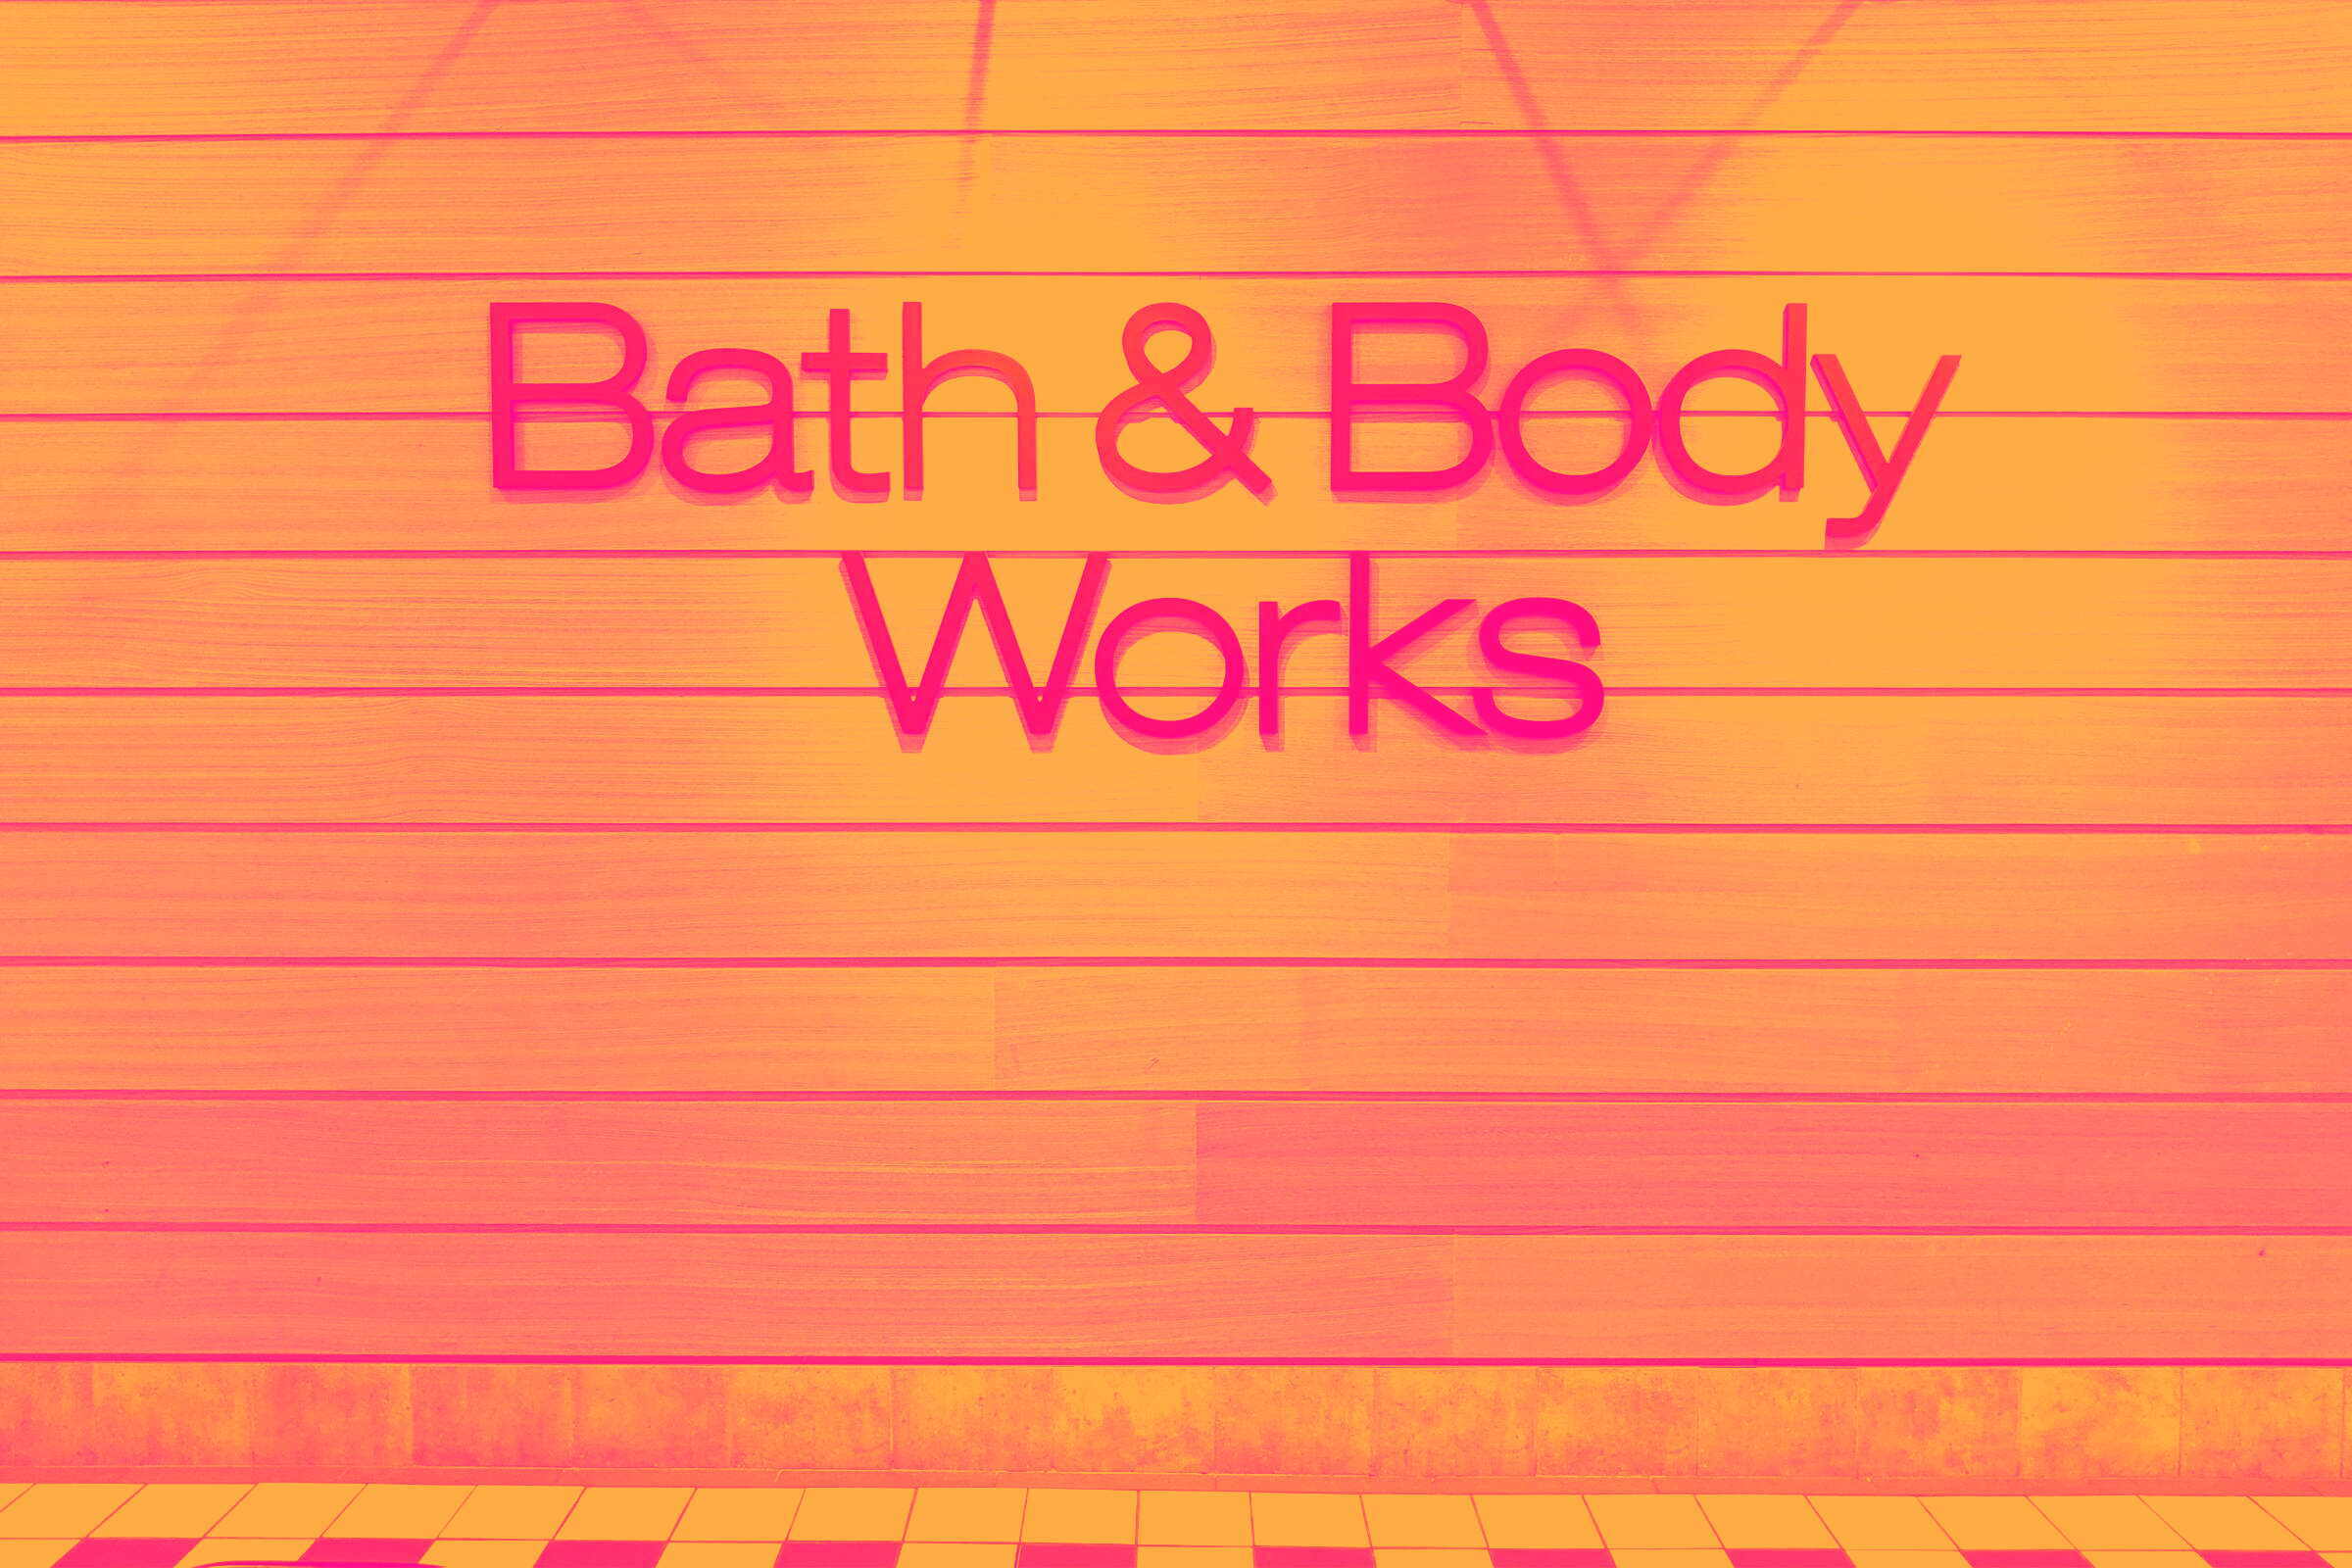 Bath body works cover image 356729a9faec